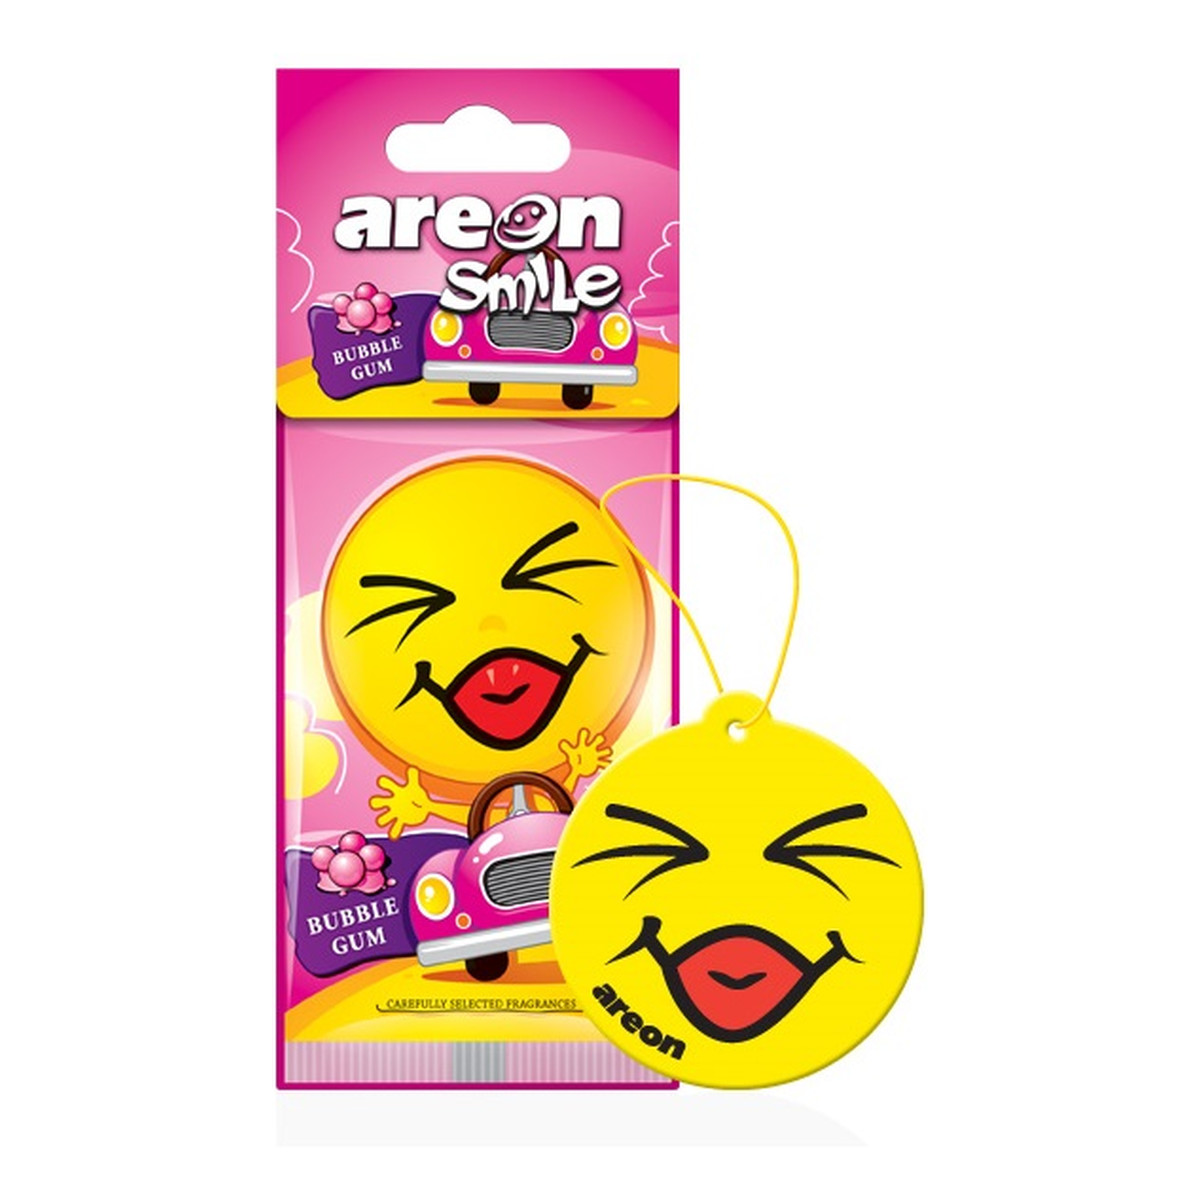 Areon Smile dry odświeżacz do samochodu bubble gum